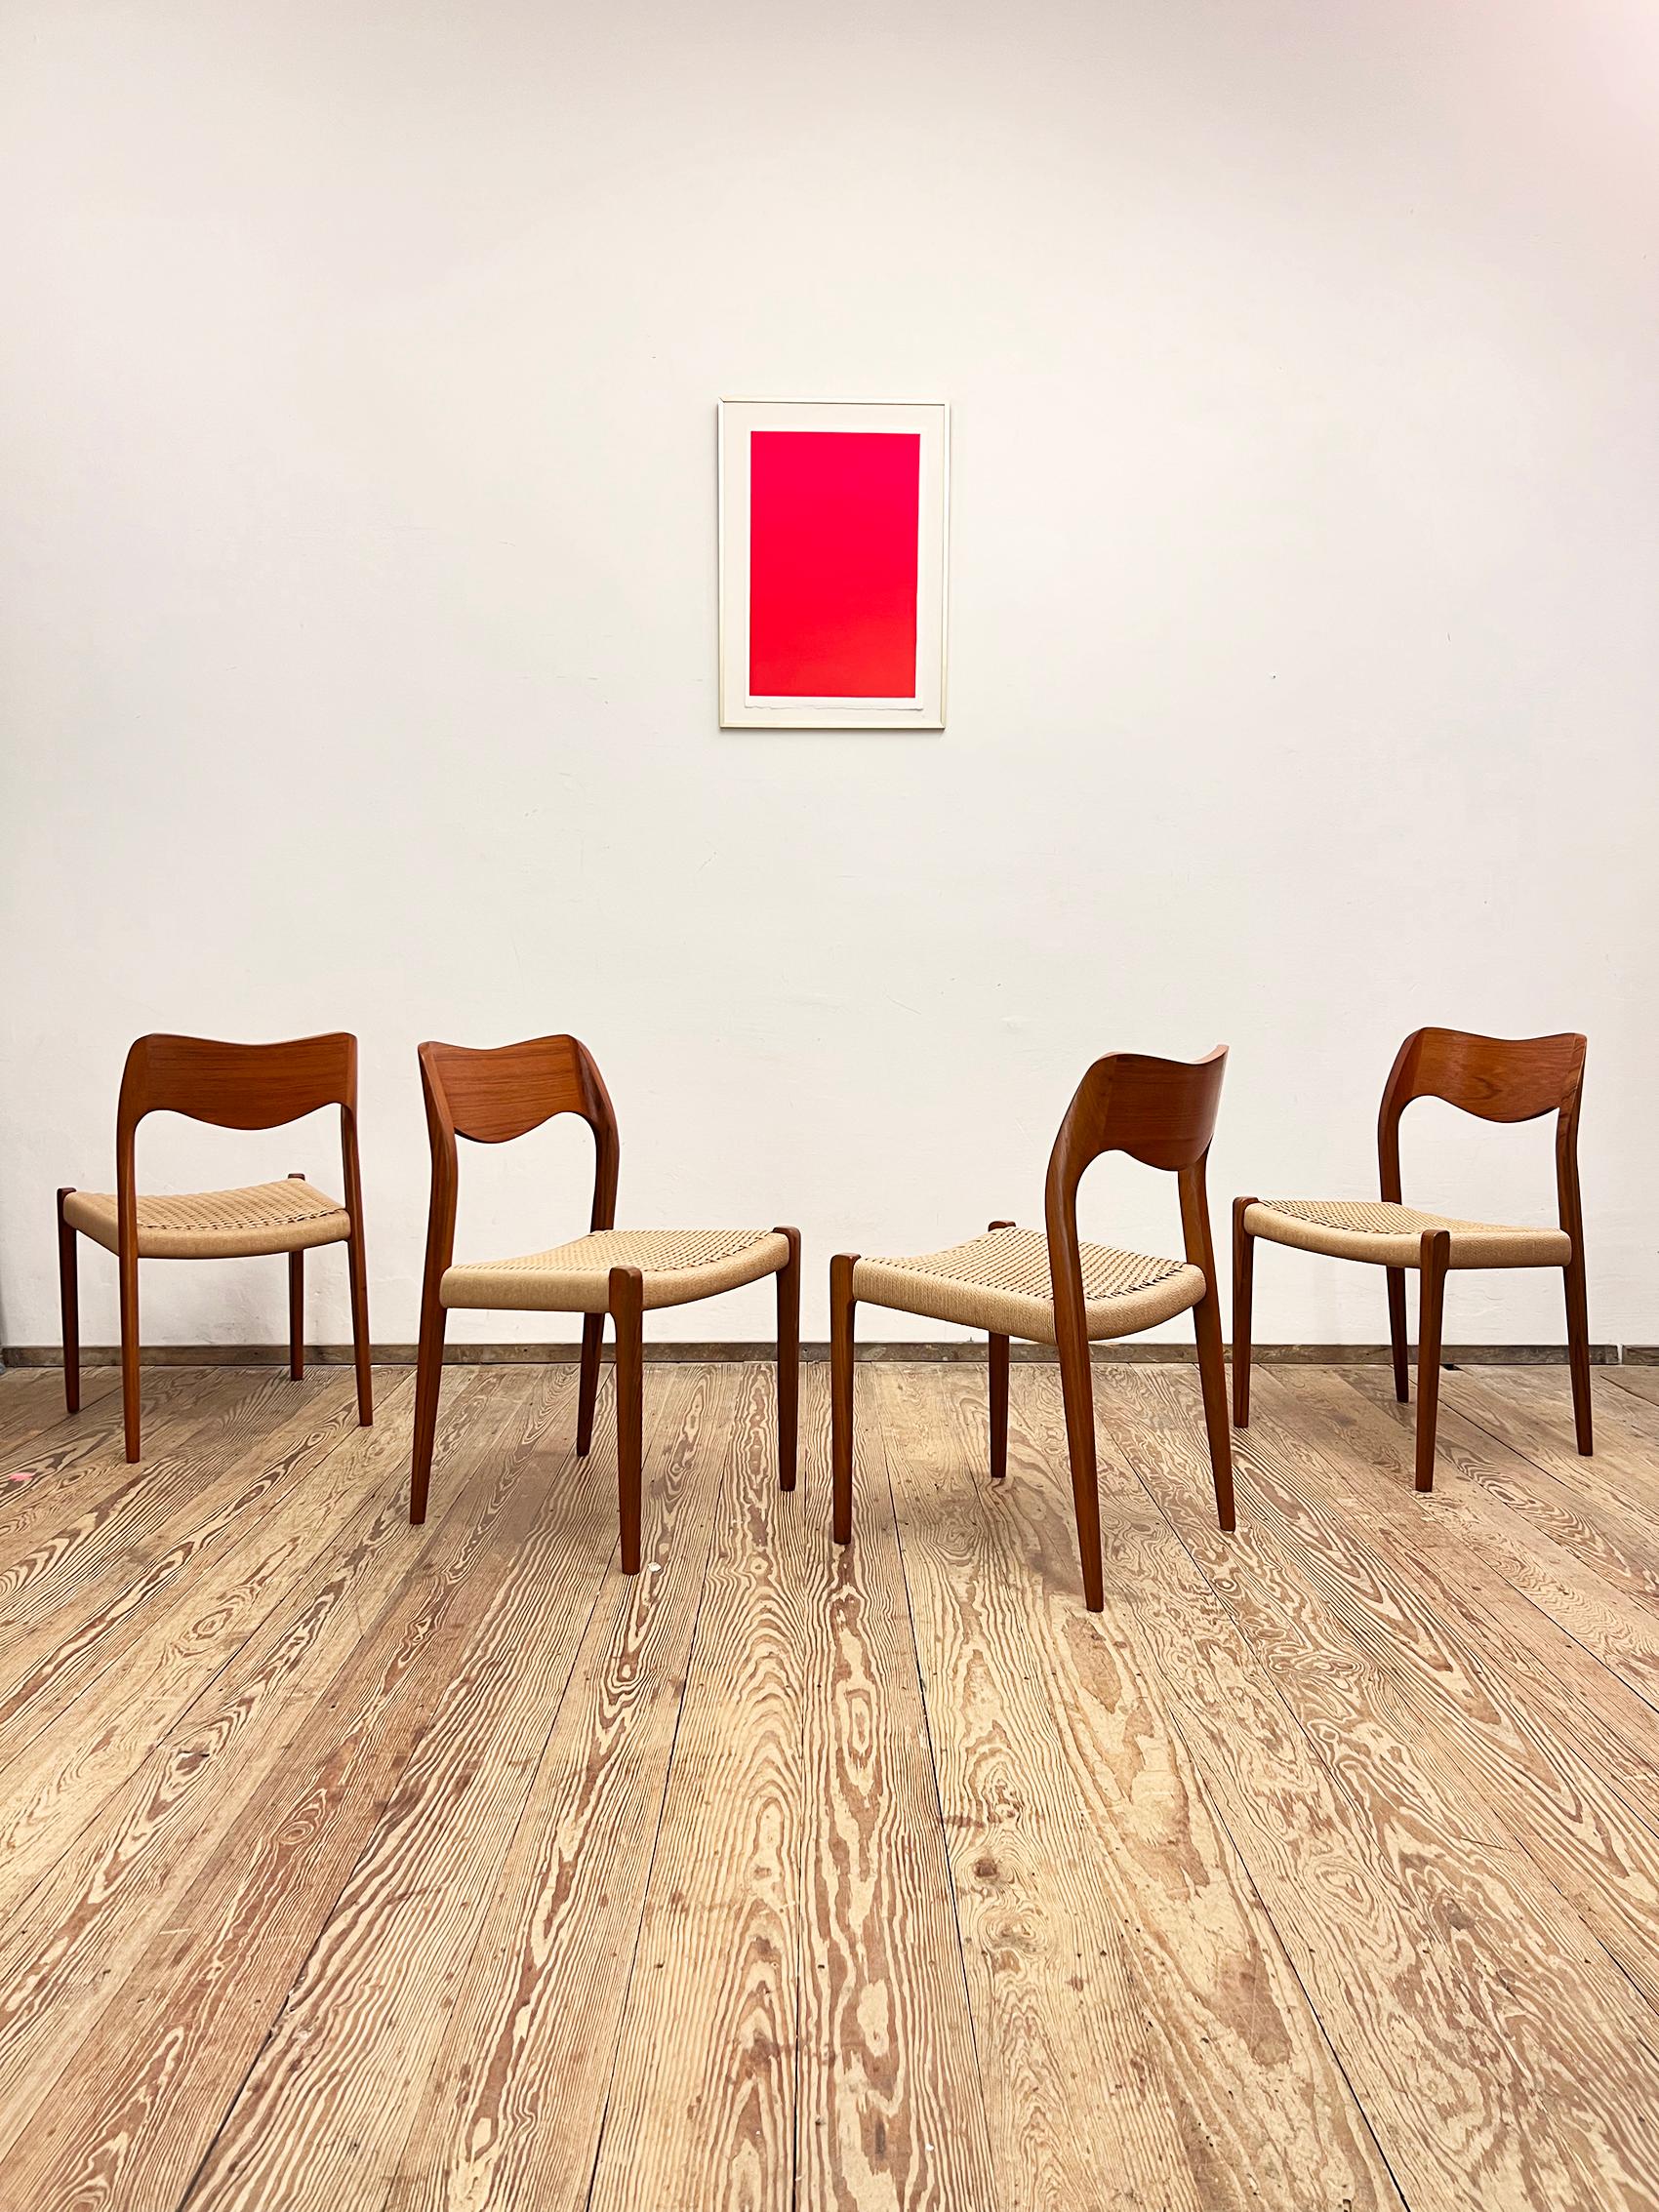 Dimensions 49 x 49 x 79 x 44cm (Largeur x Profondeur x Hauteur x Hauteur du siège)

Design/One danois par Niels O. Møller, fabriqué par I.L.A. Møller au Danemark. L'ensemble comprend 4 chaises de salle à manger en bois de teck, partiellement plaqué